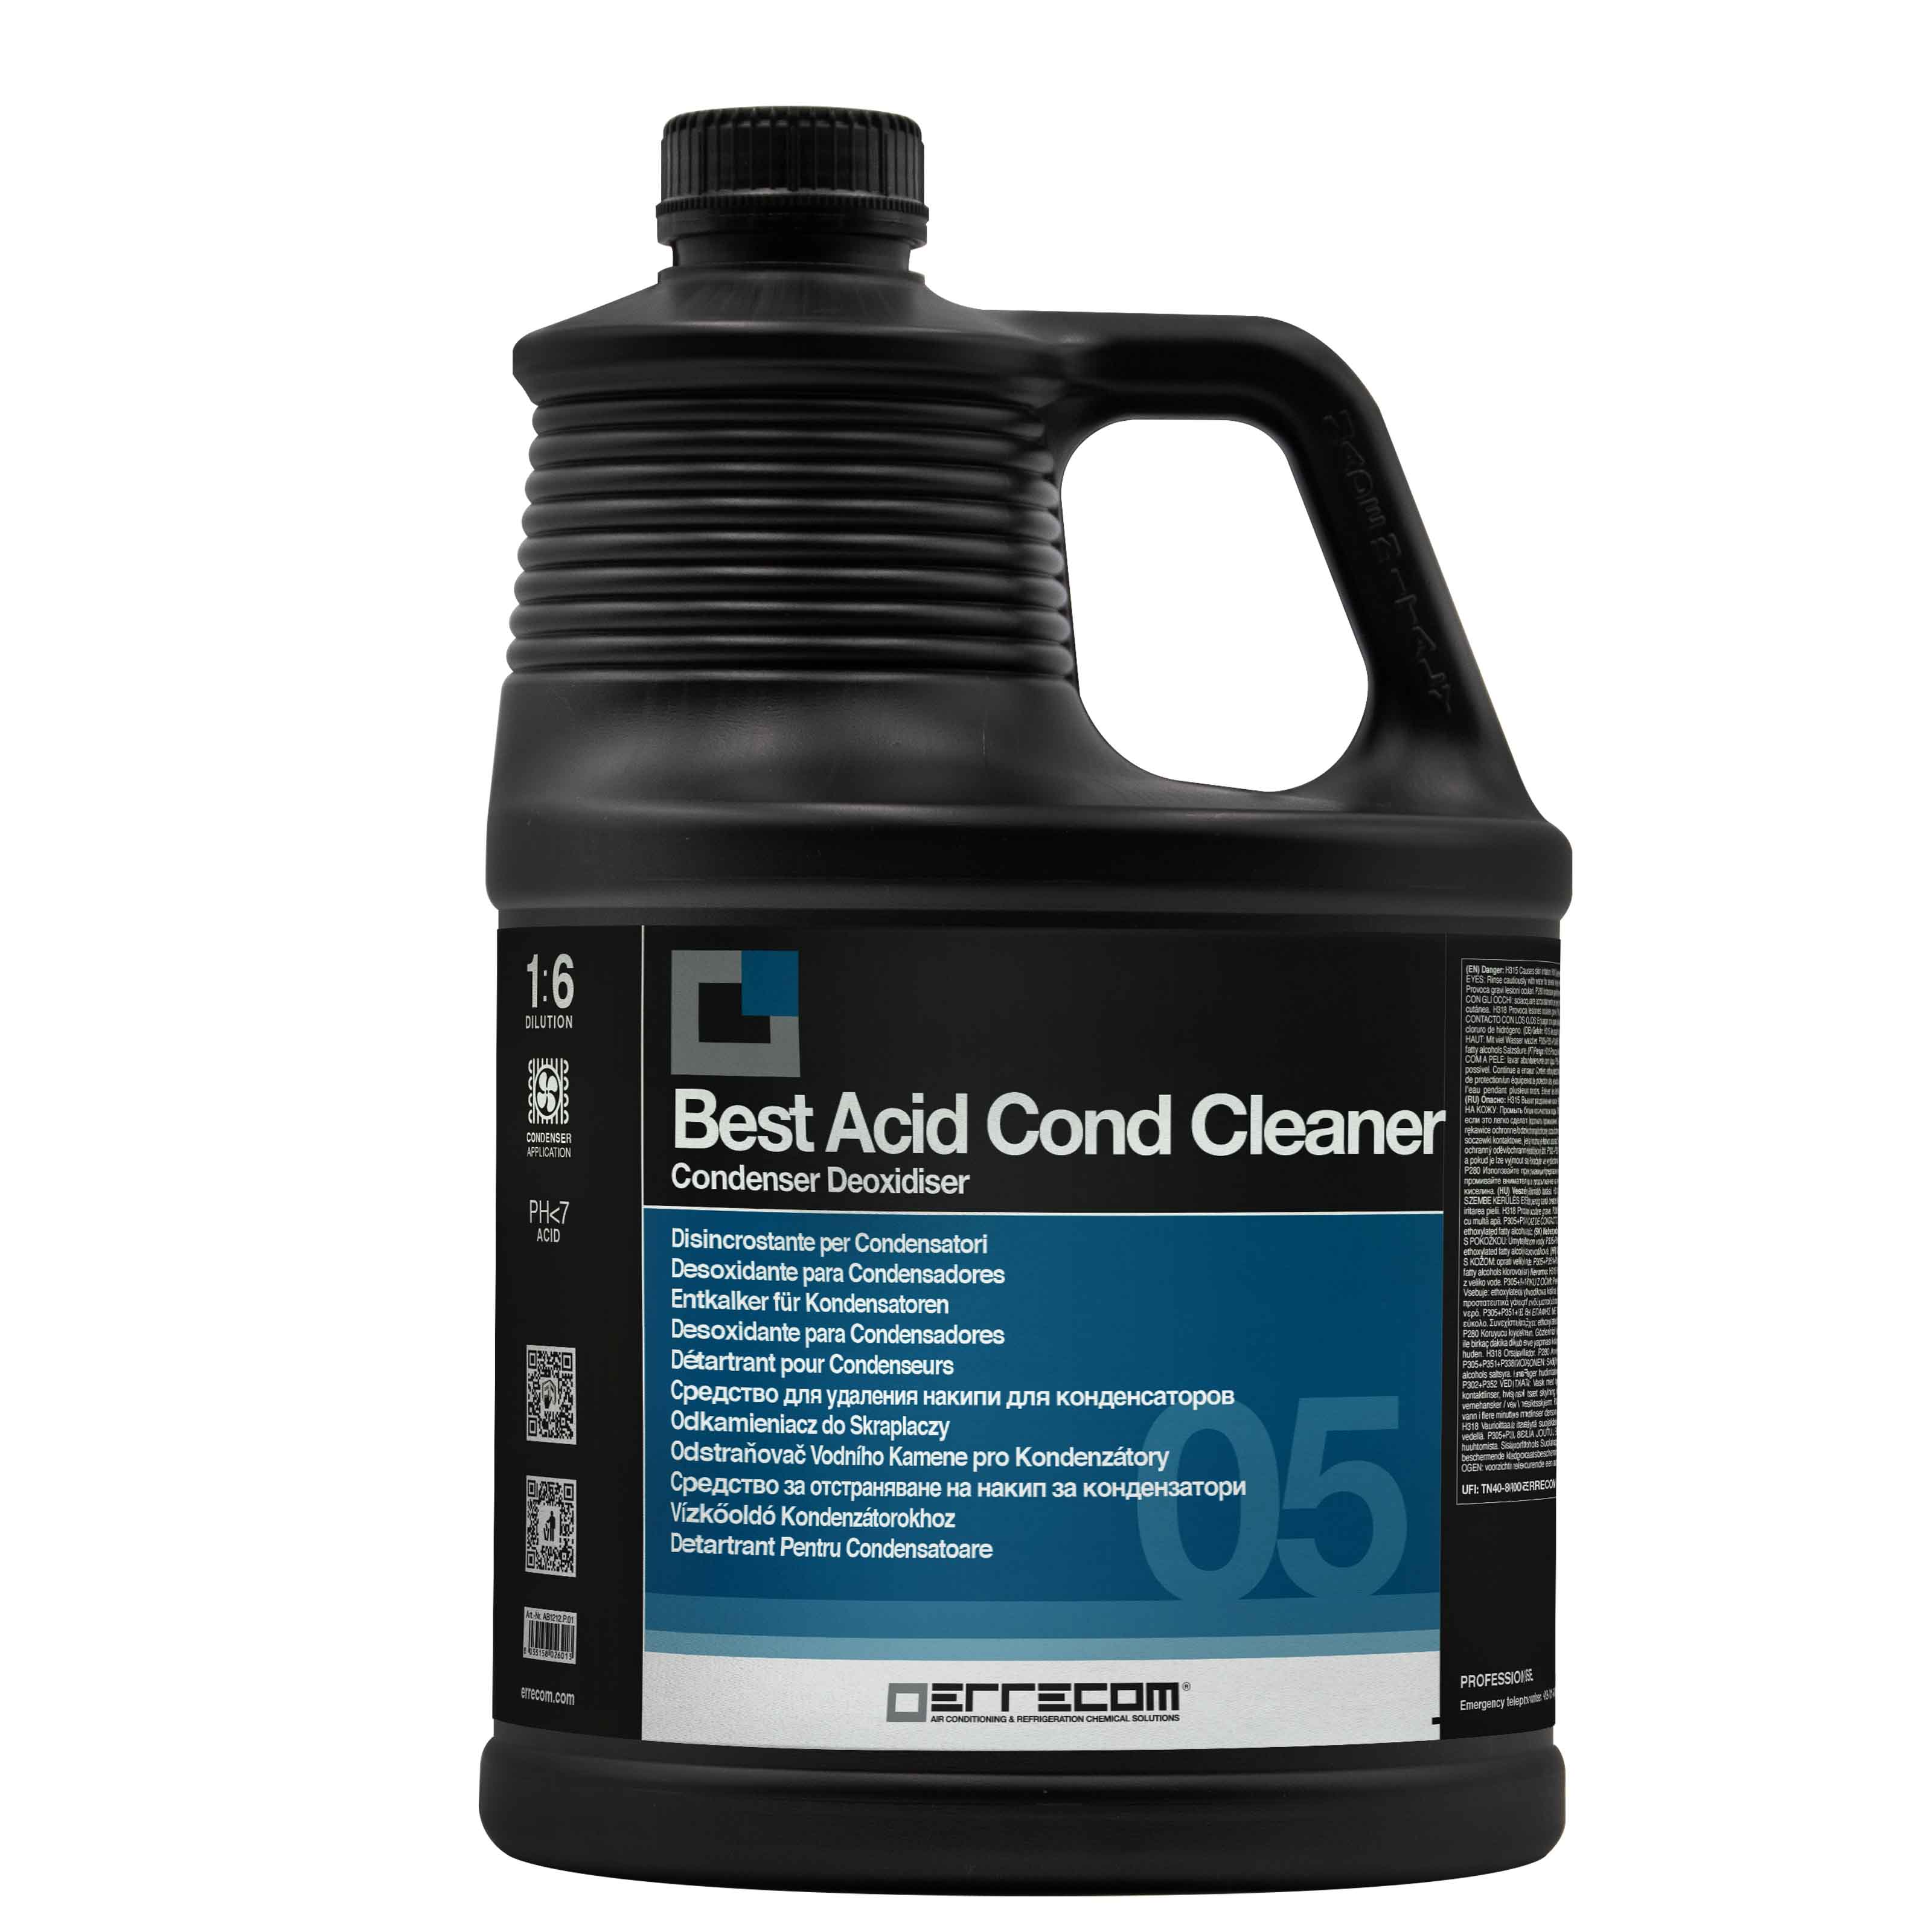 2 x Disincrostante Acido Concentrato Liquido per Condensatori - BEST ACID COND CLEANER - 5 lt - Confezione n° 2 pz. - Foto 1 